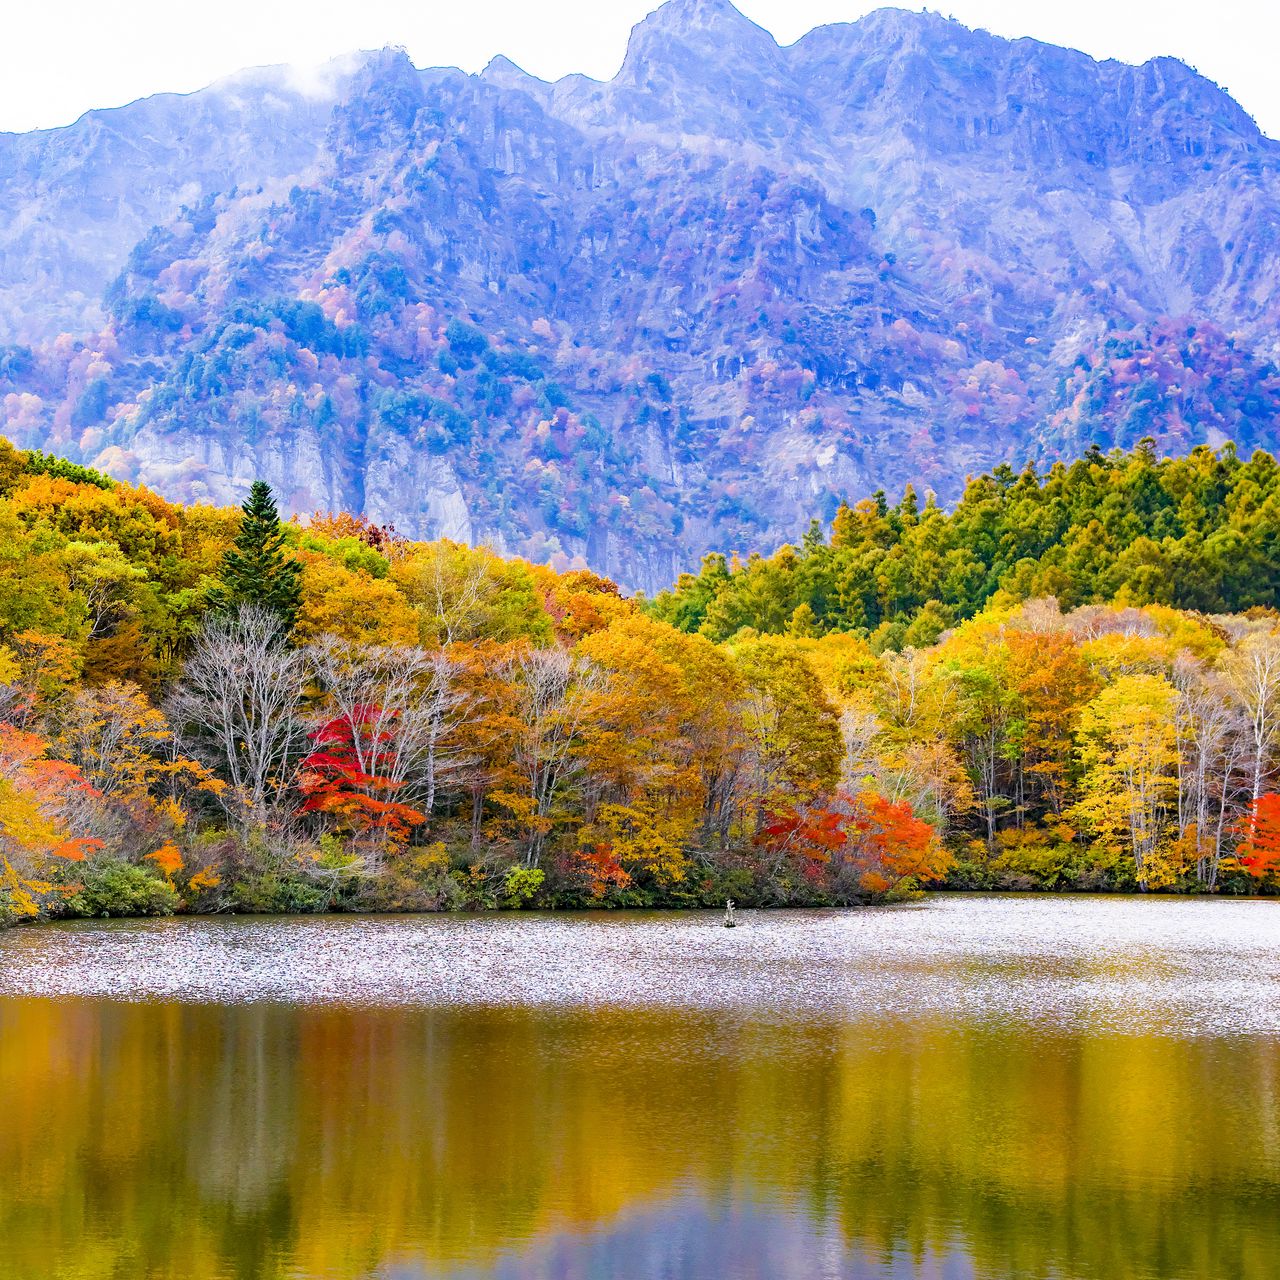 Download wallpaper 1280x1280 japan togakushi lake mountains trees